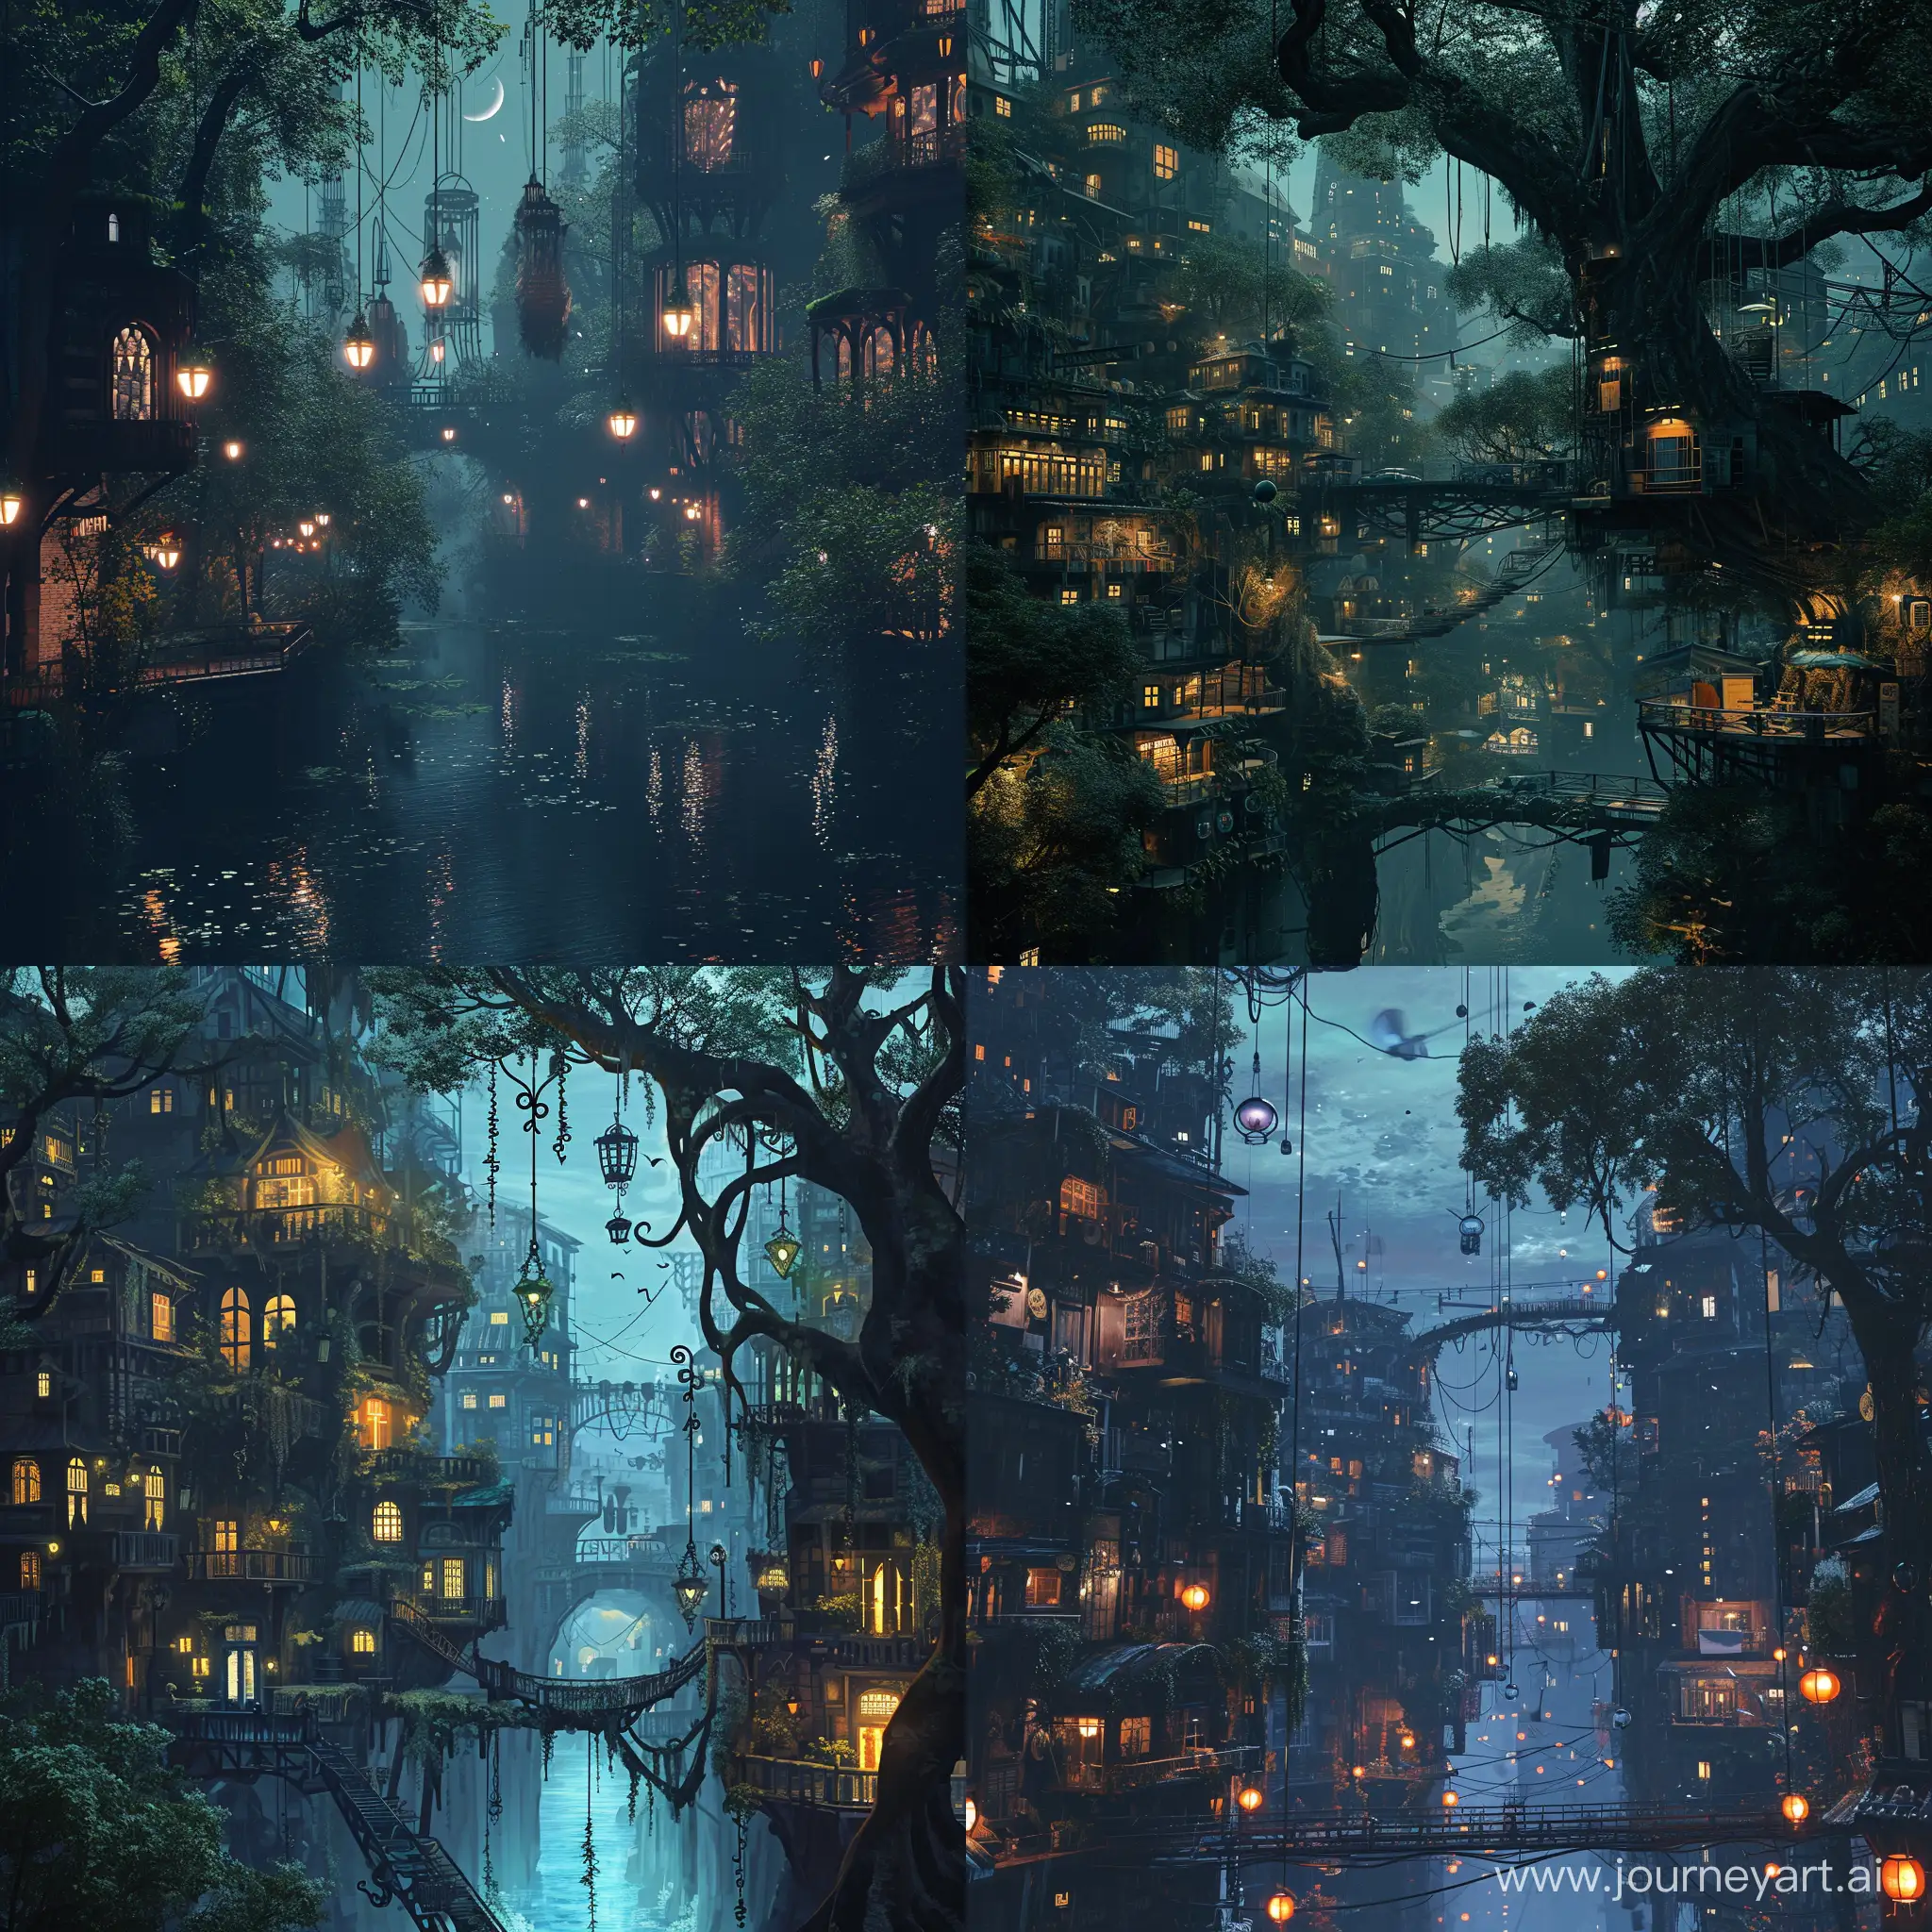 Fantastical-Noir-Cityscape-Mystical-Buildings-Plants-and-Hanging-Lanterns